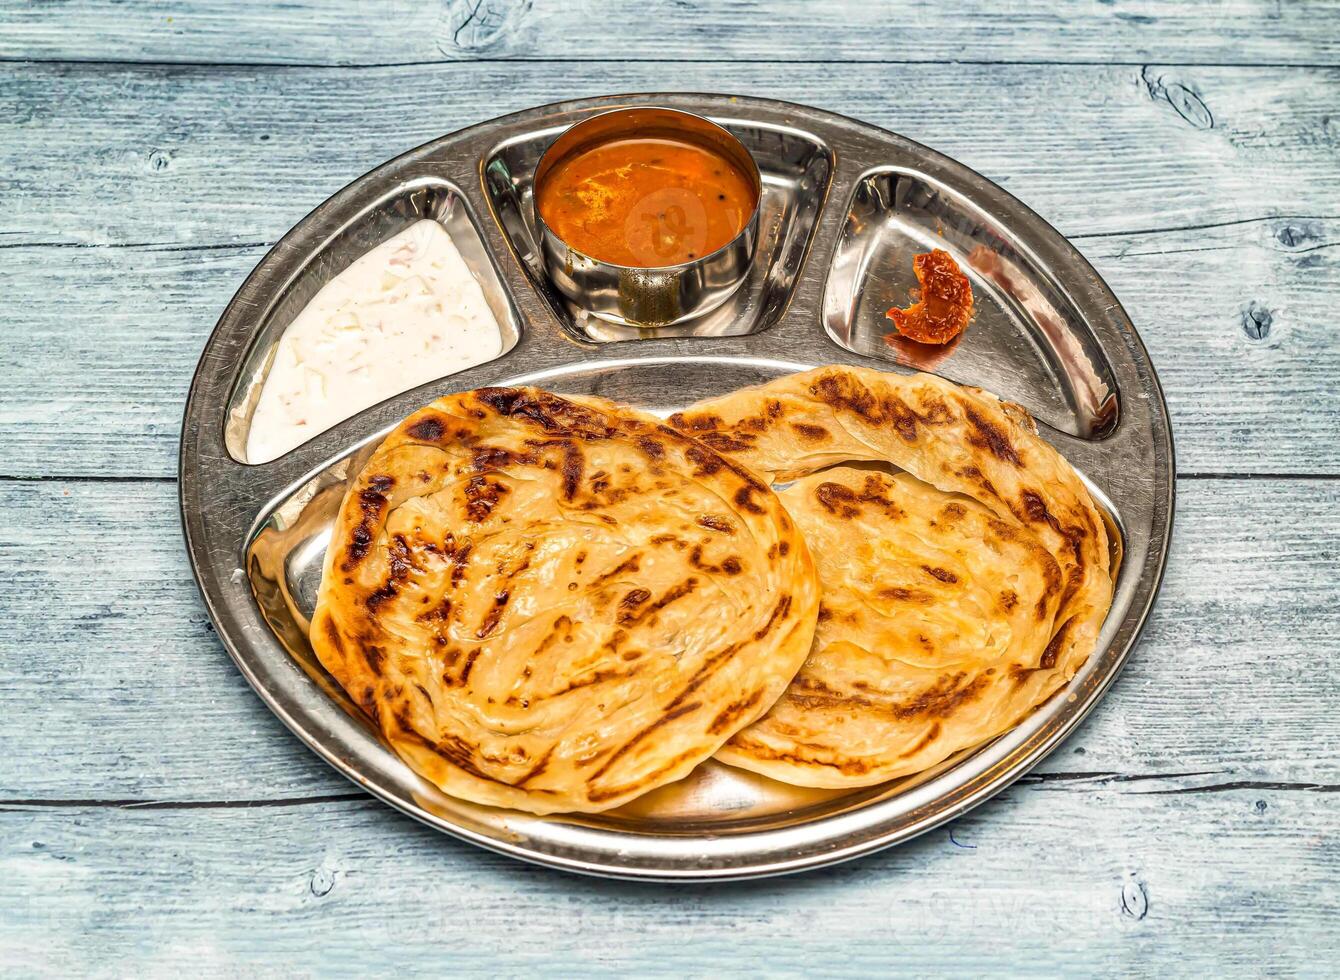 Roti prata, Paratha, fällig, poratha mit Curry, Raita und Essiggurke serviert im Thali Gericht isoliert auf hölzern Tabelle oben Aussicht von indisch würzig Essen foto